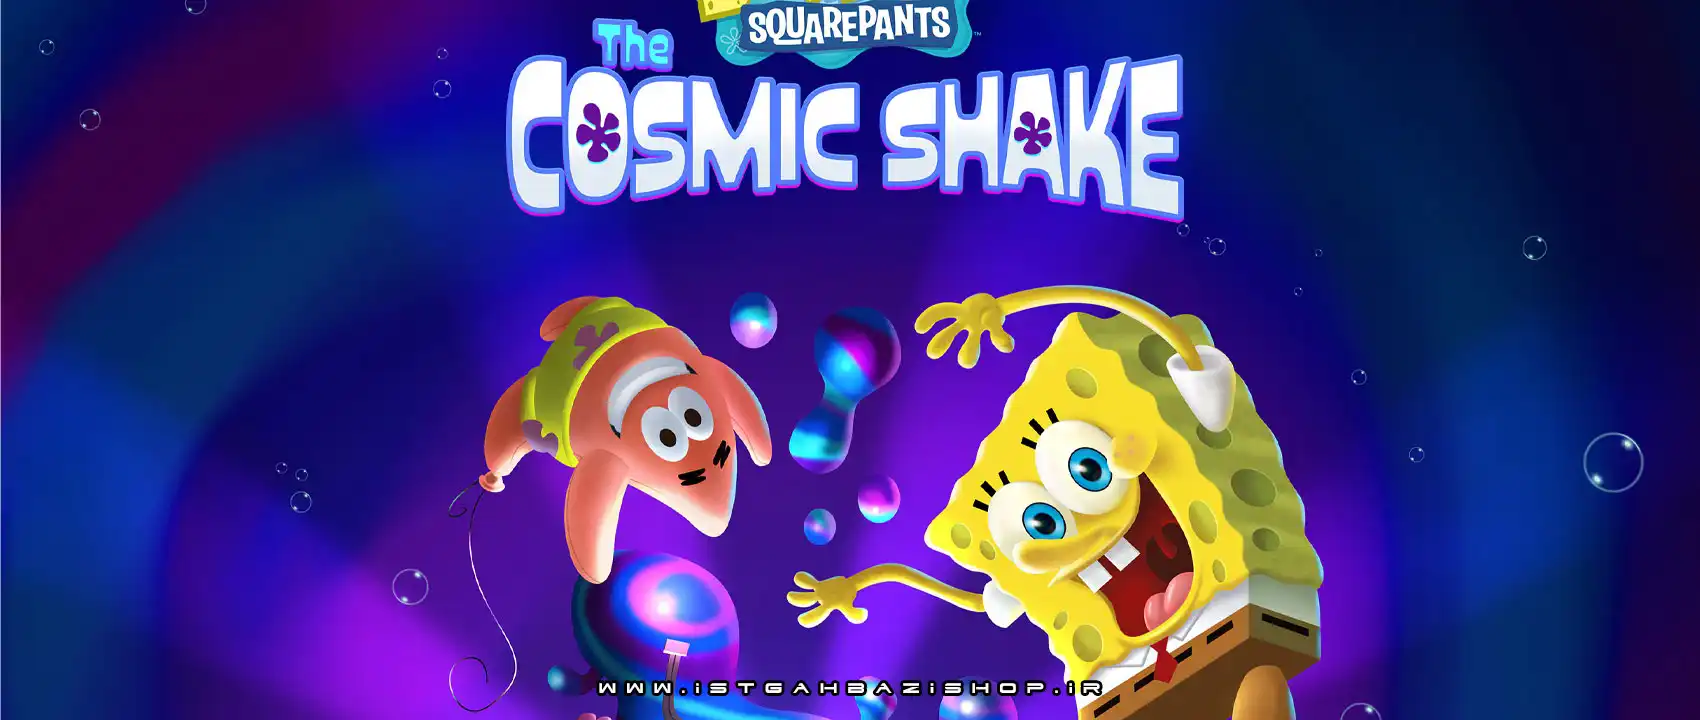 SpongeBob SquarePants The Cosmic Shake Ps4